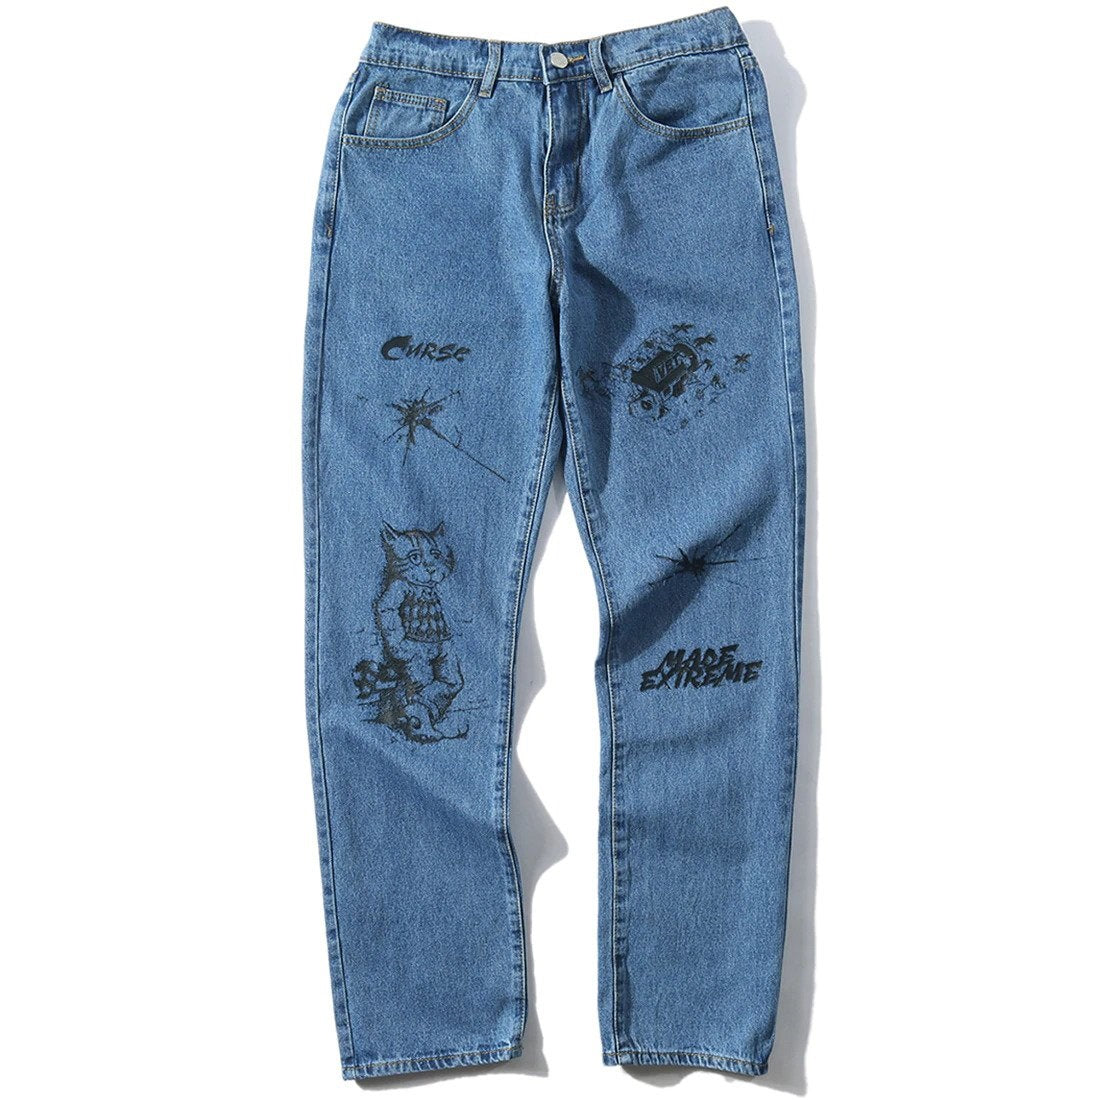 custom streetwear jeans